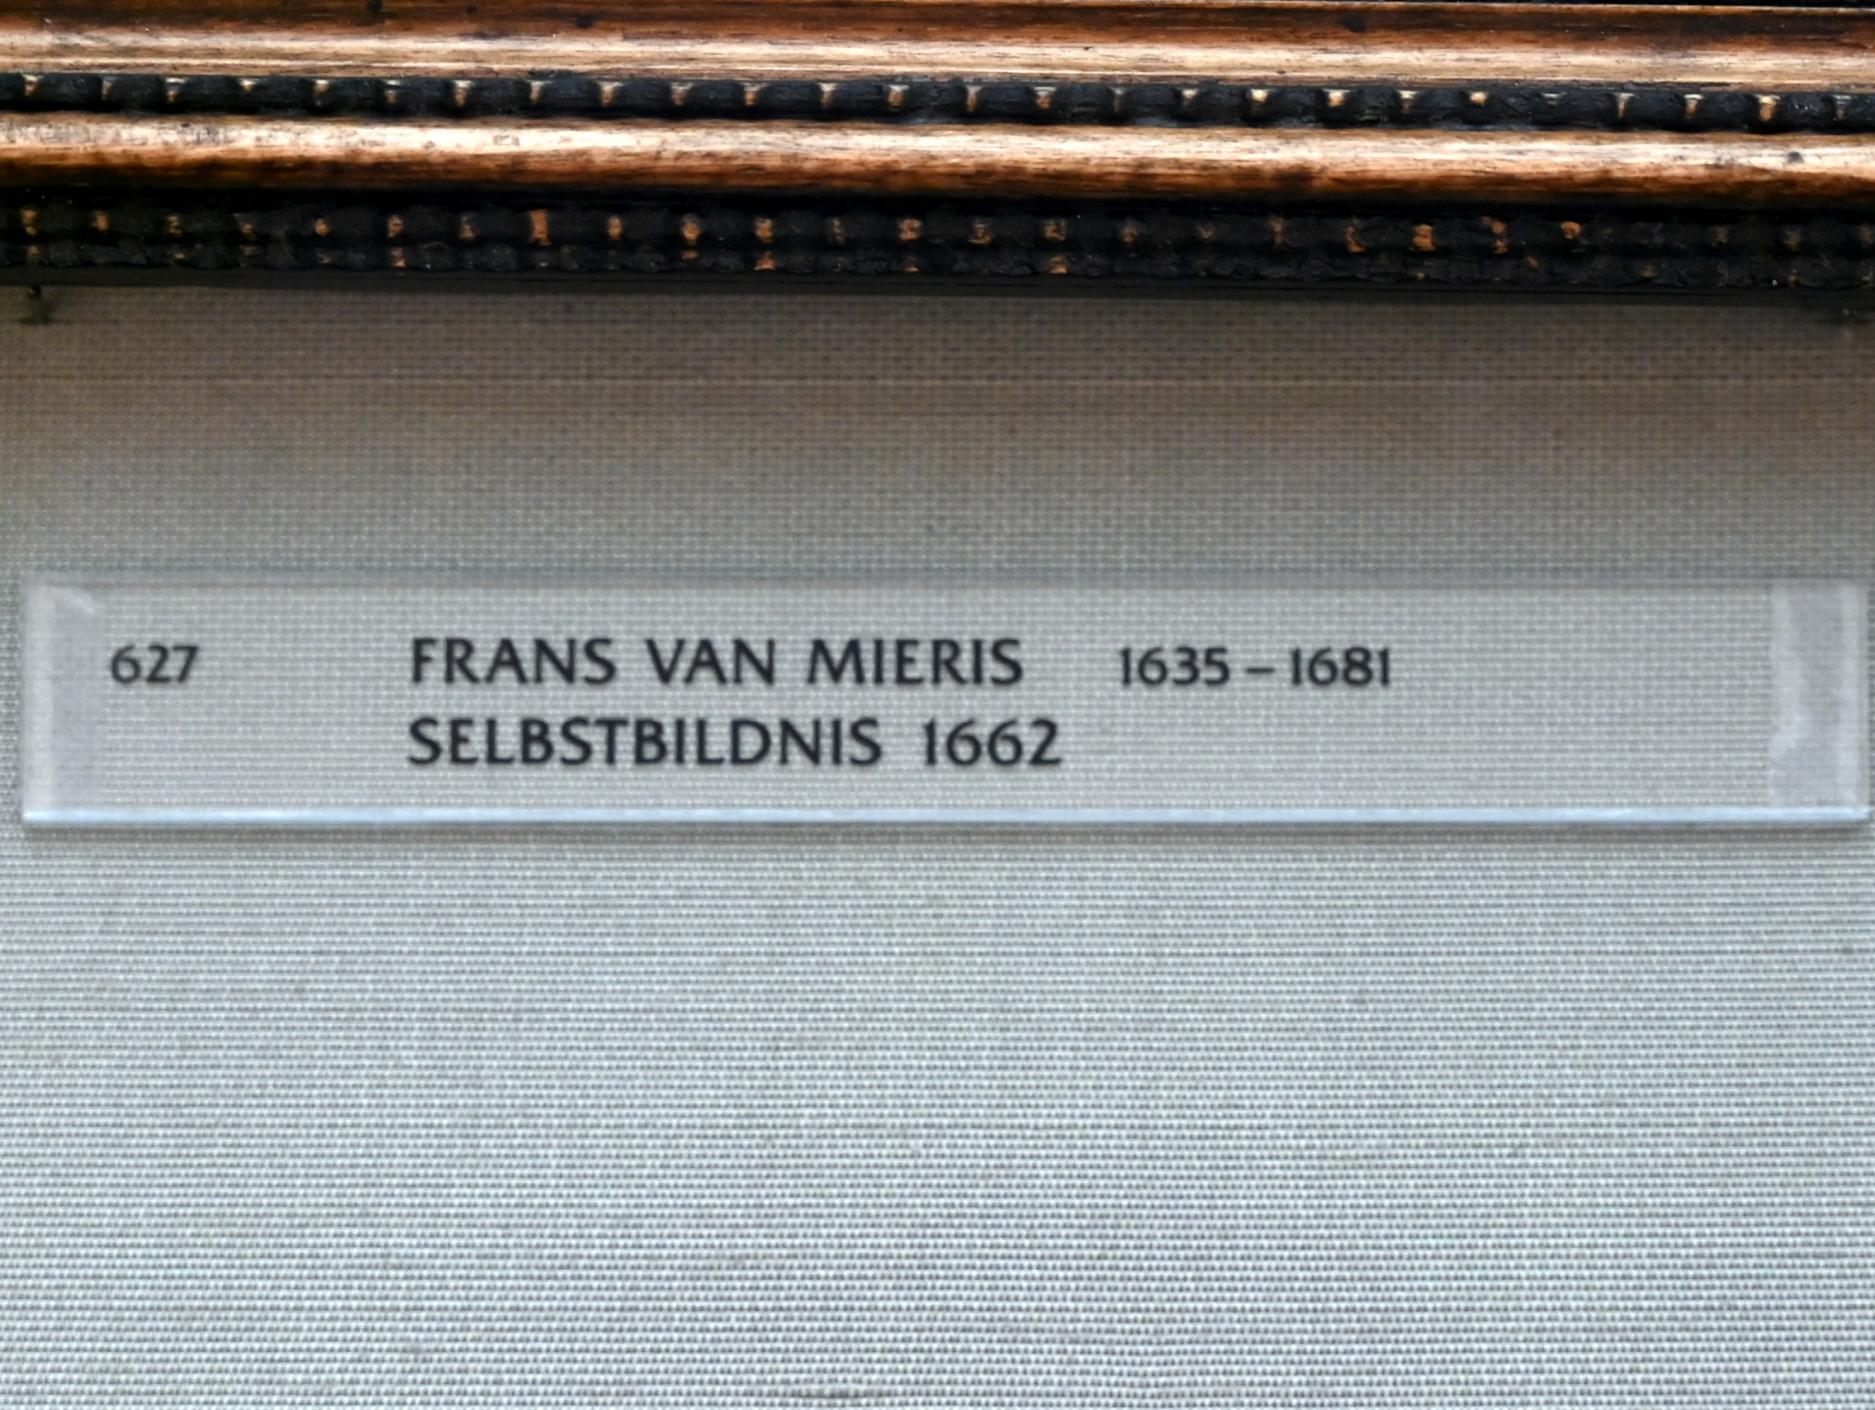 Frans van Mieris der Ältere (1657–1678), Selbstbildnis, München, Alte Pinakothek, Obergeschoss Kabinett 22, 1662, Bild 2/2